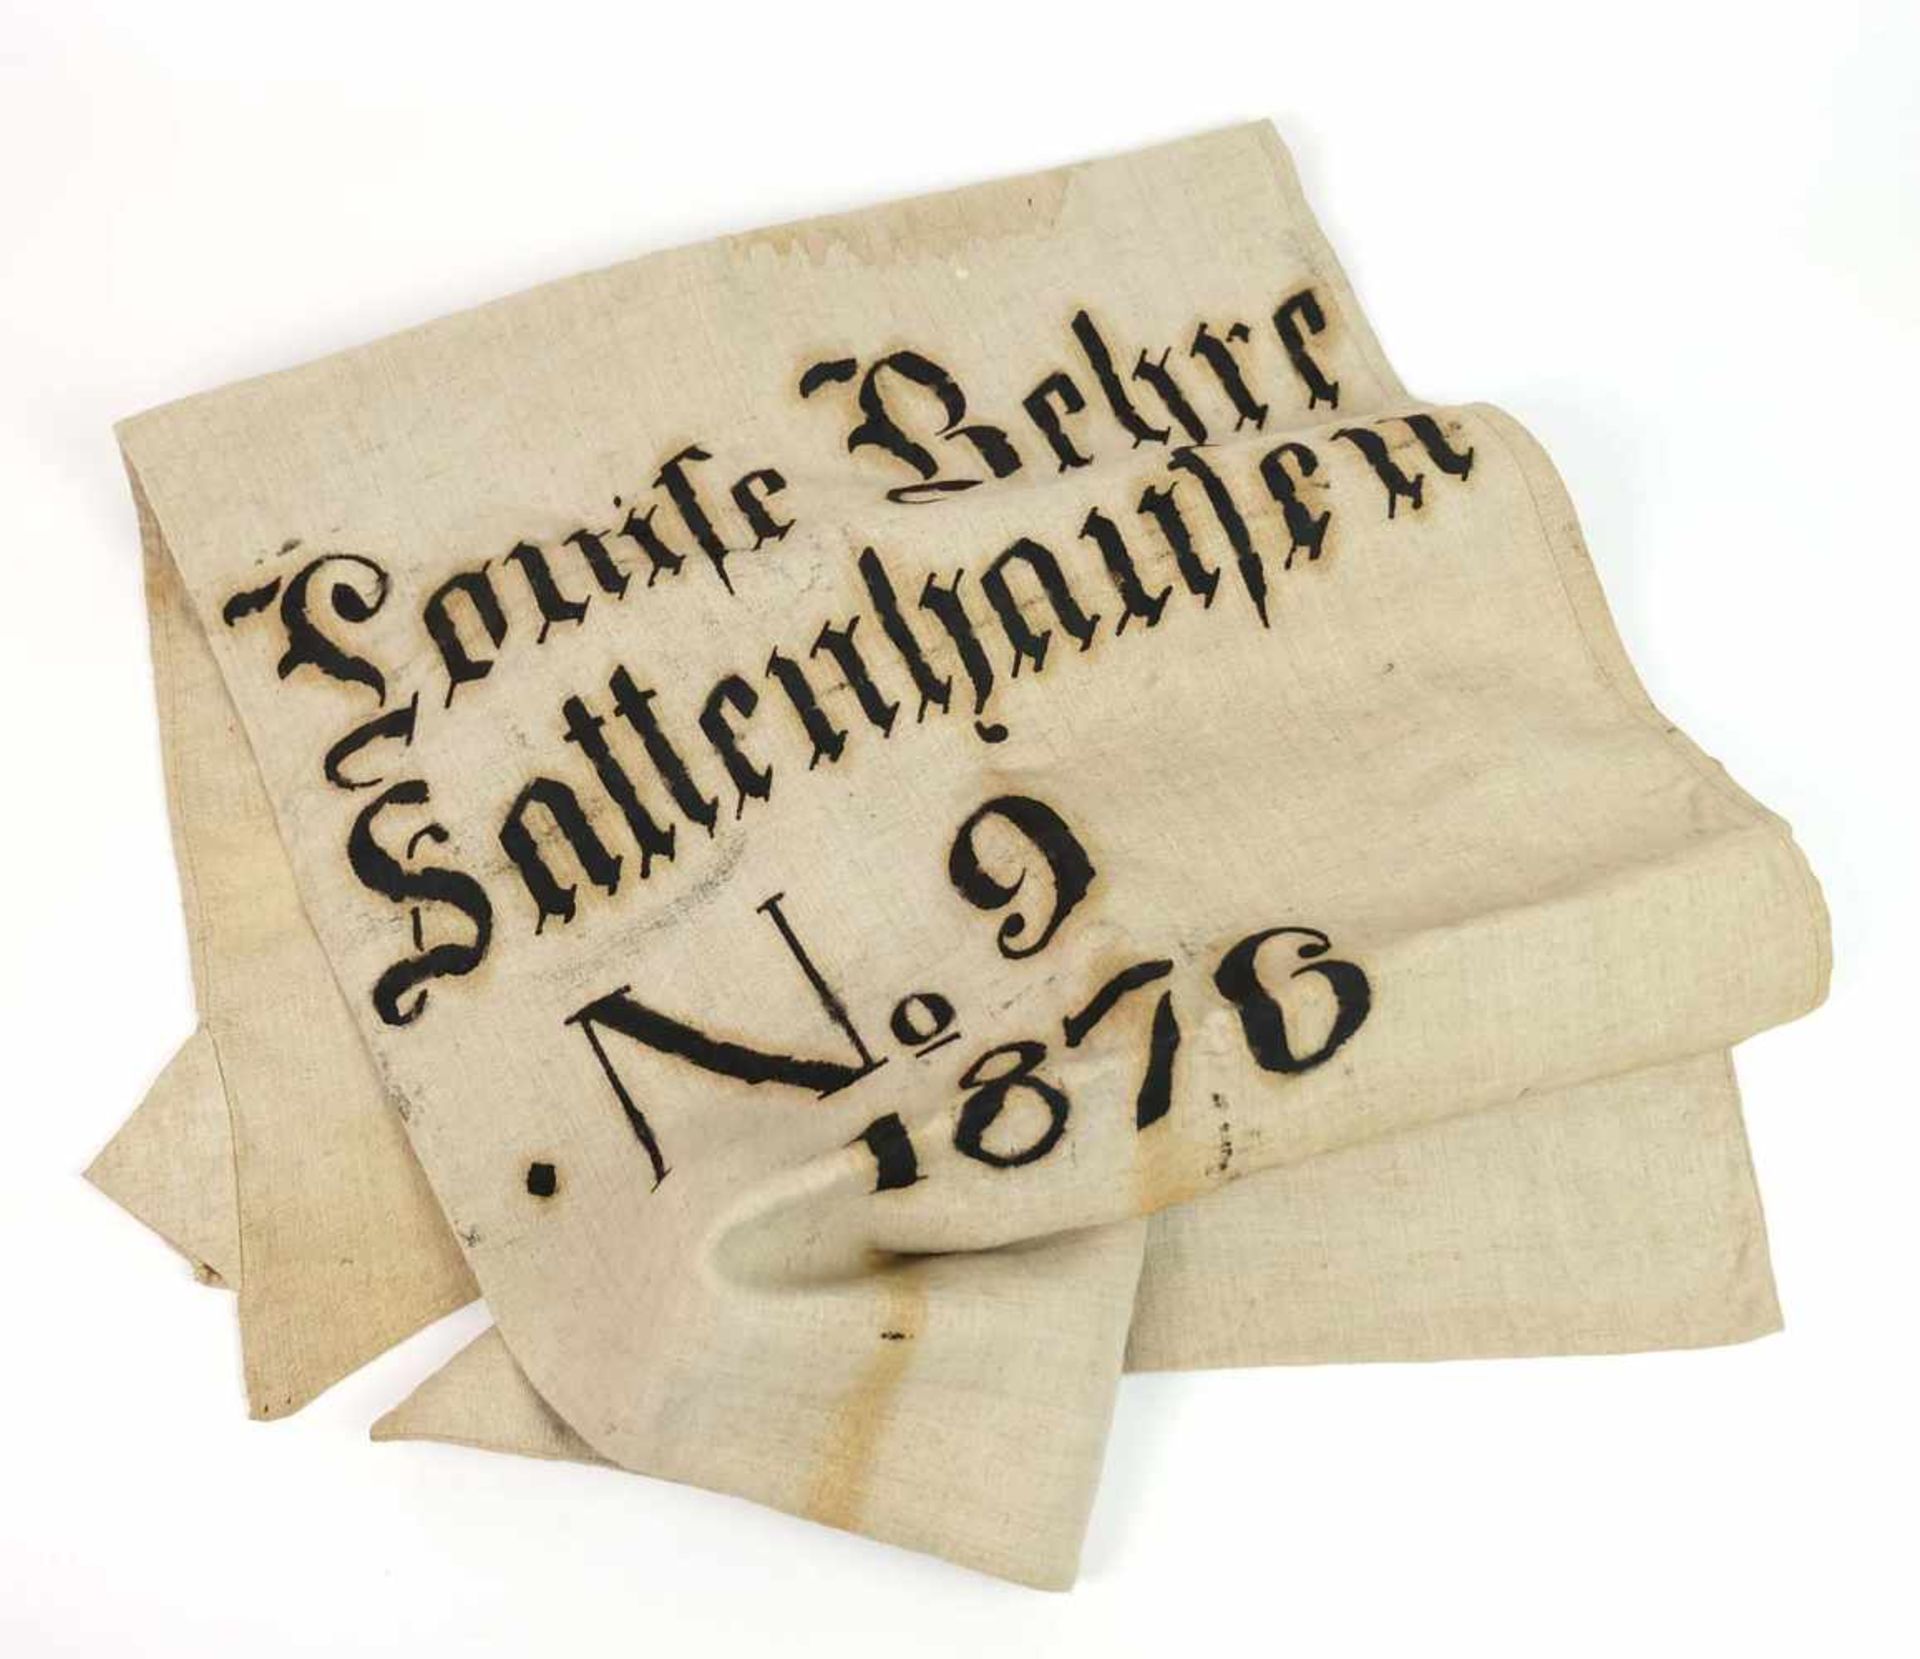 GETREIDESACK, Leinen, schabloniert: Louise Behre/ Sattenhausen No. 9 1876 (ex Coll. Claire